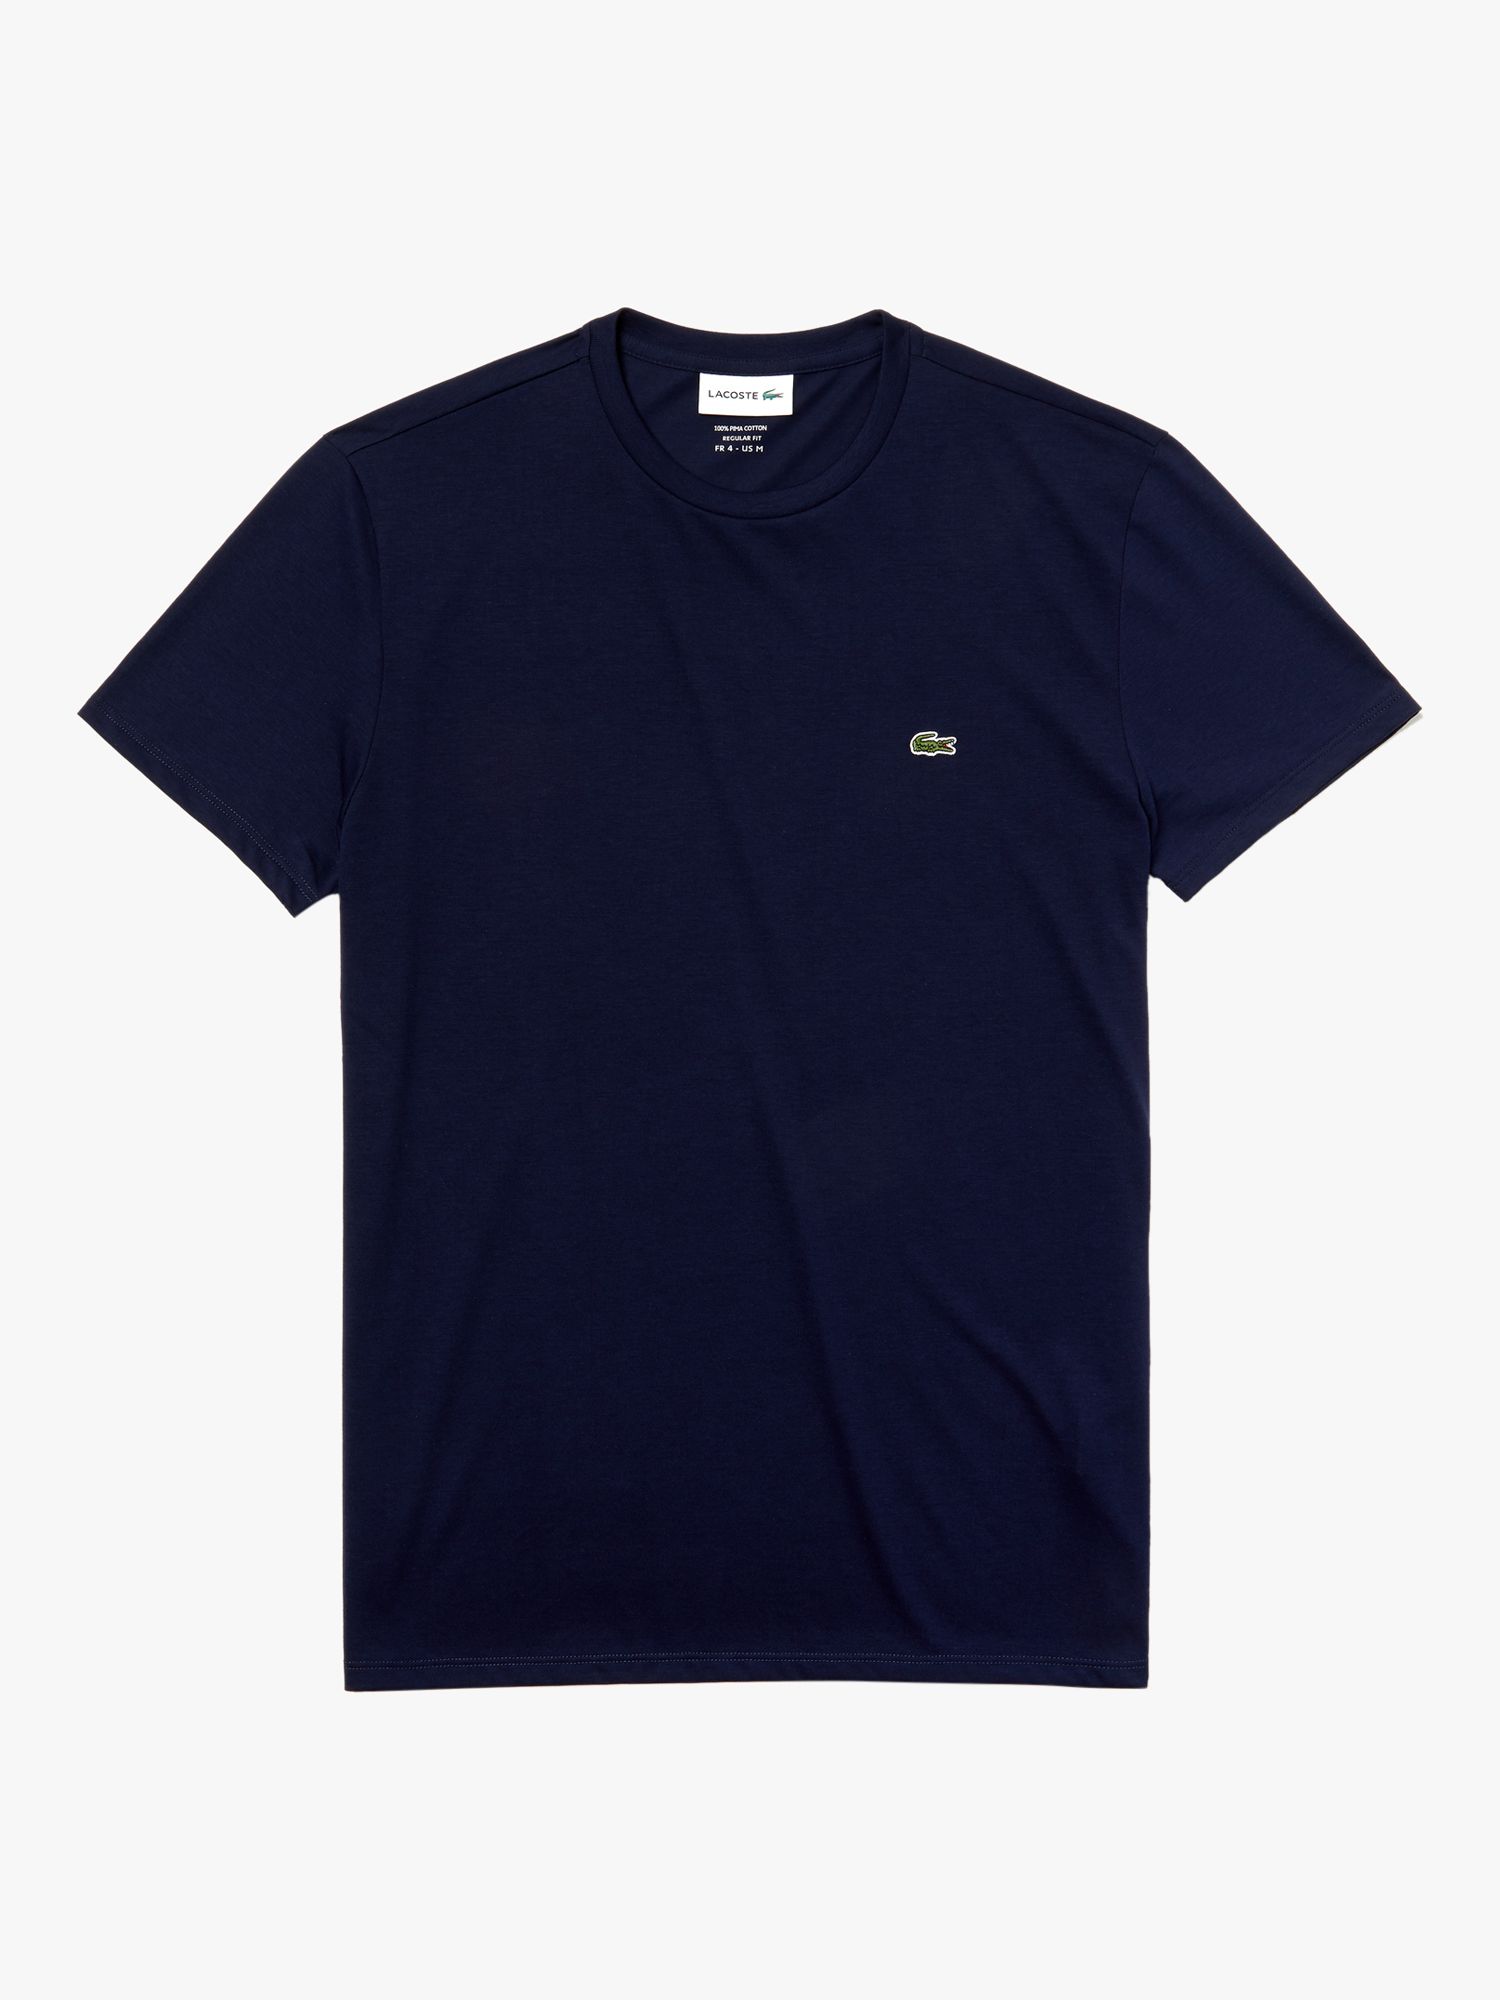 Хлопковая футболка с круглым вырезом Lacoste Classic Pima, темно-синяя